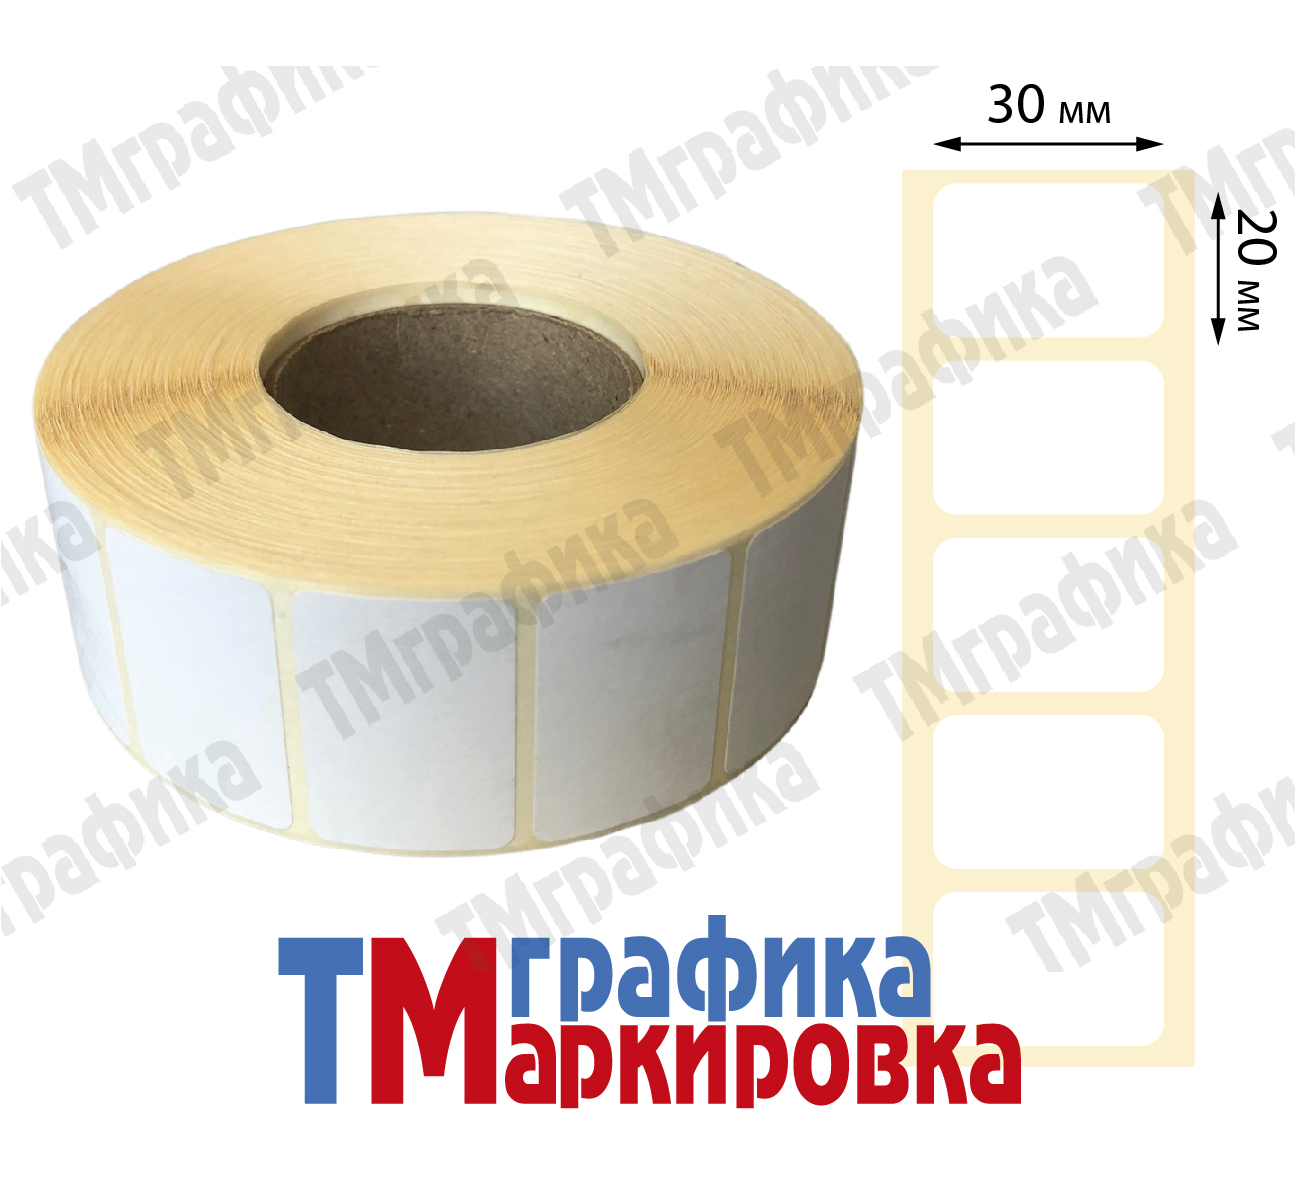 30х20 мм 2000 шт. полипропиленовые Термотрансферные этикетки - 336.60 руб.